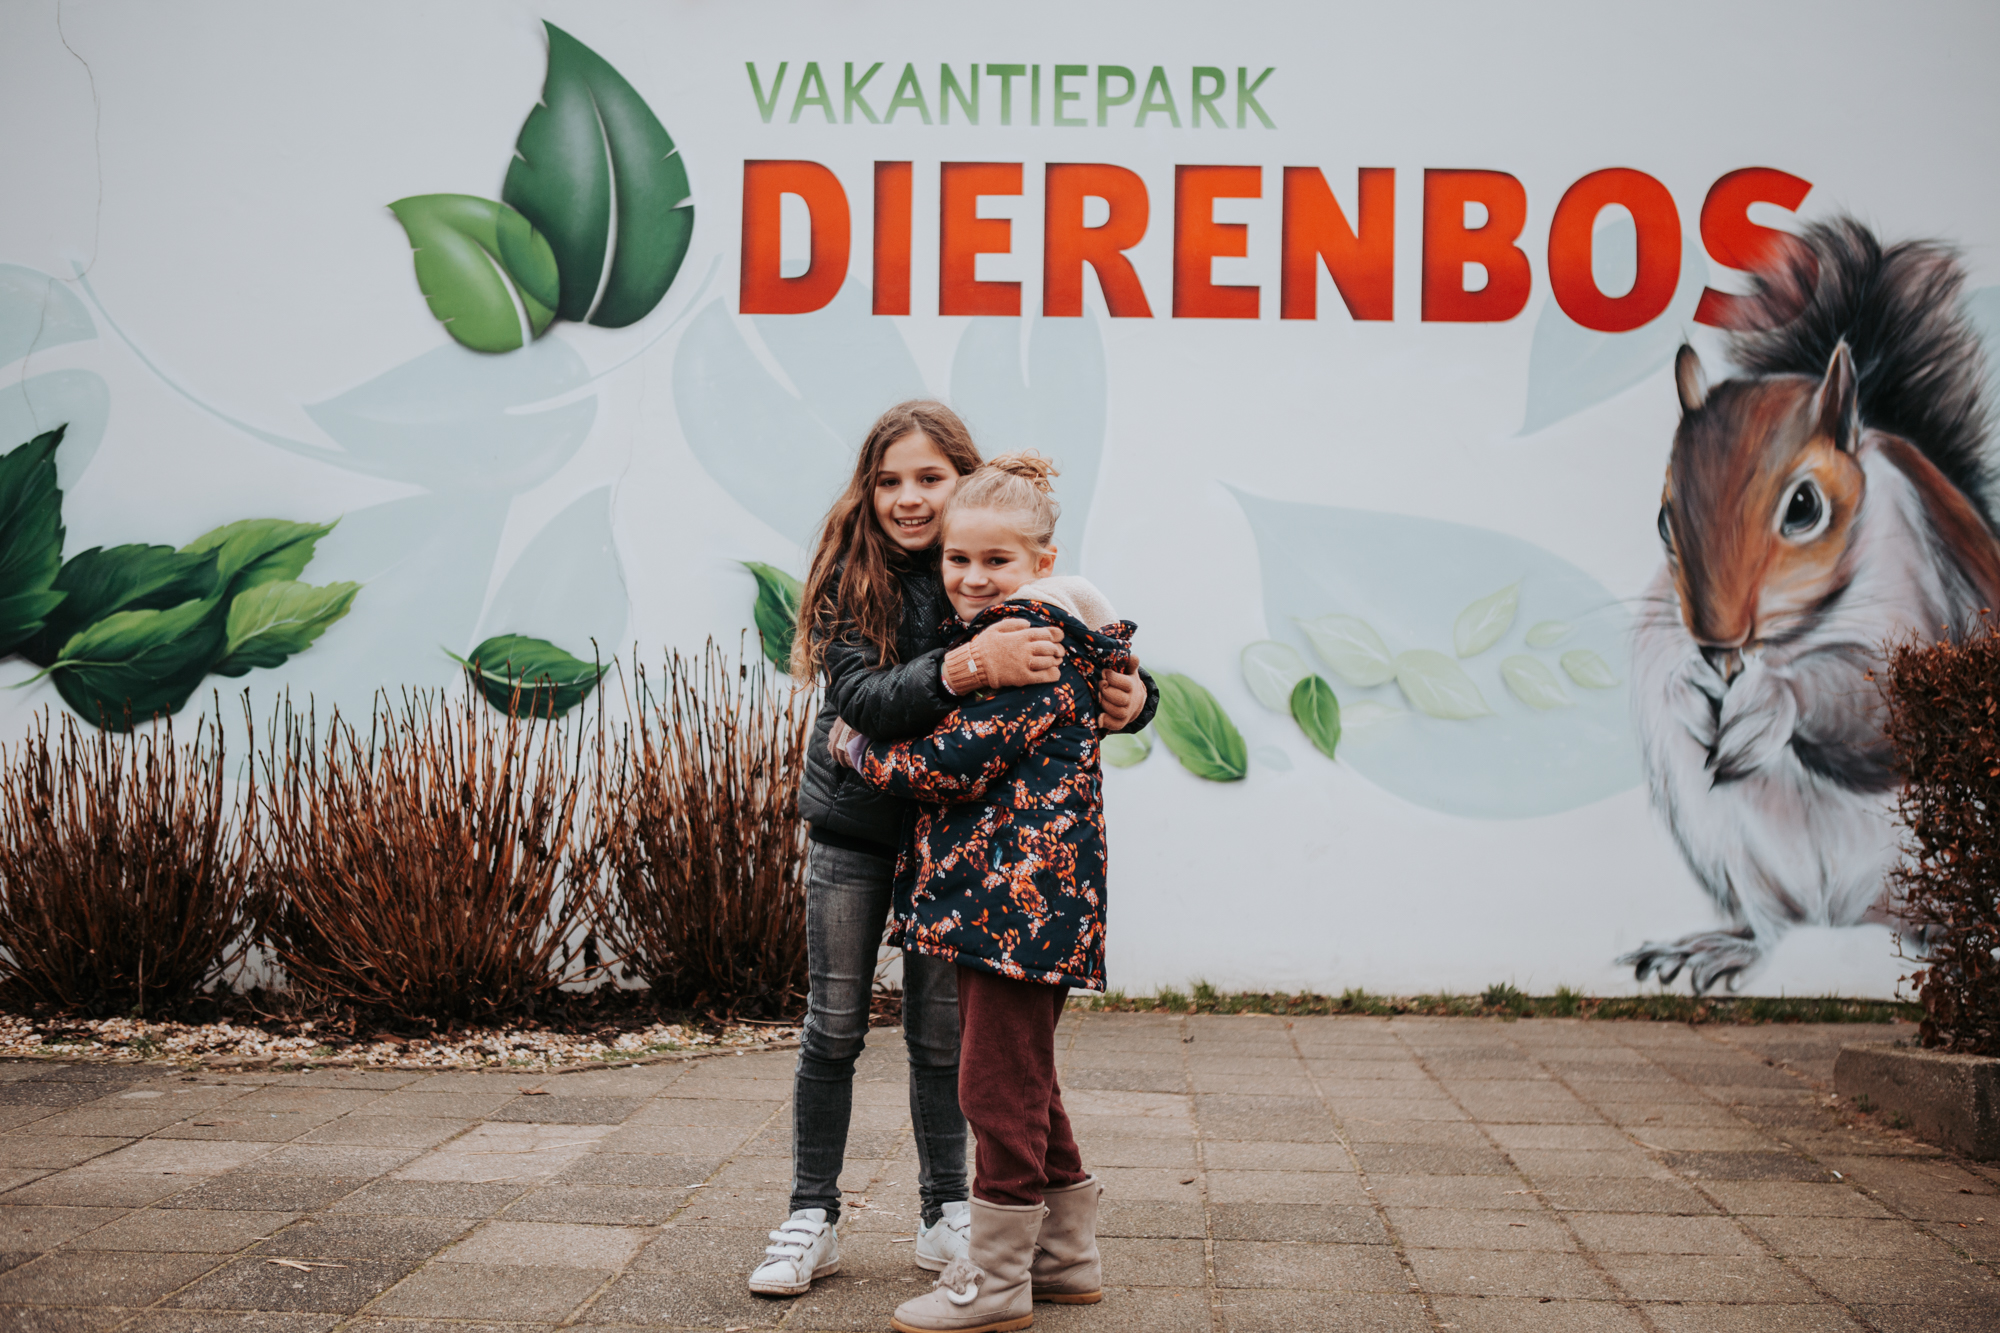 Vakantiepark Dierenbos, een weekendje weg om niet te vergeten